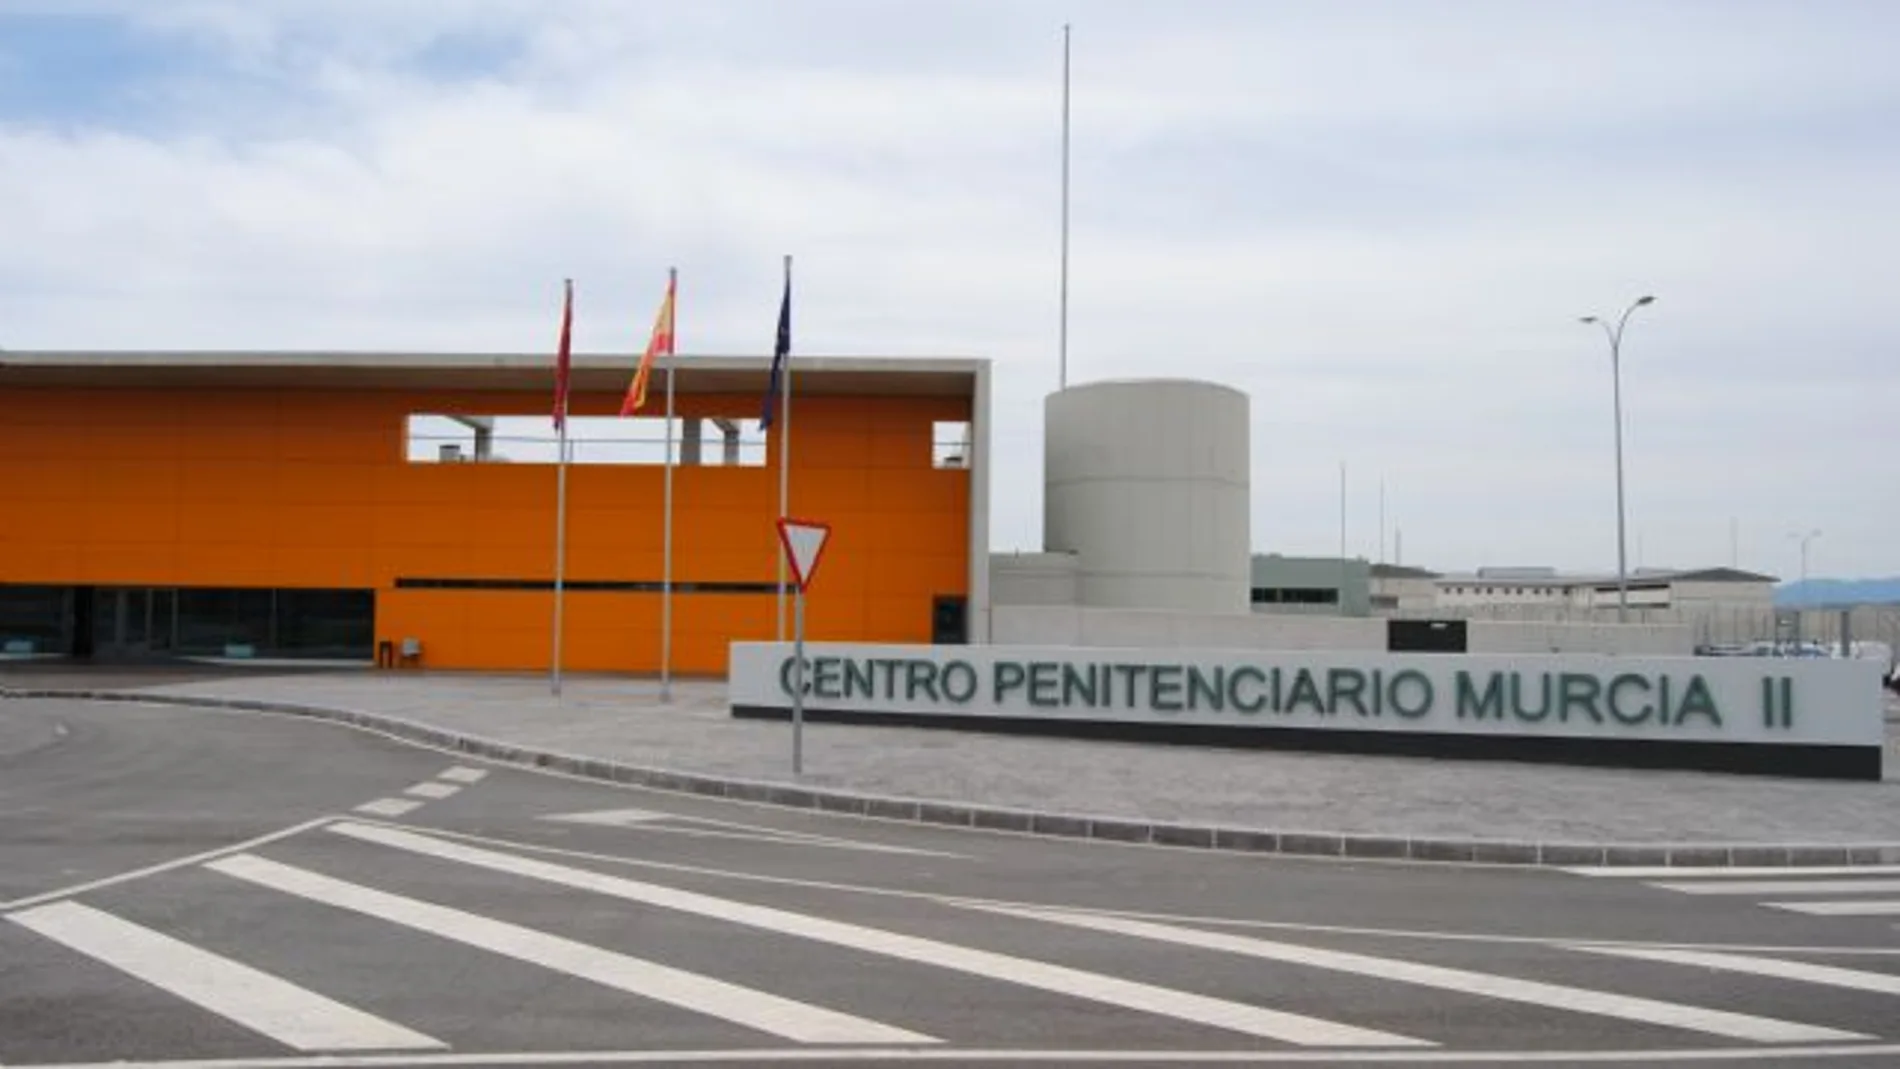 Un interno agrede a dos funcionarios de la prisión Murcia II